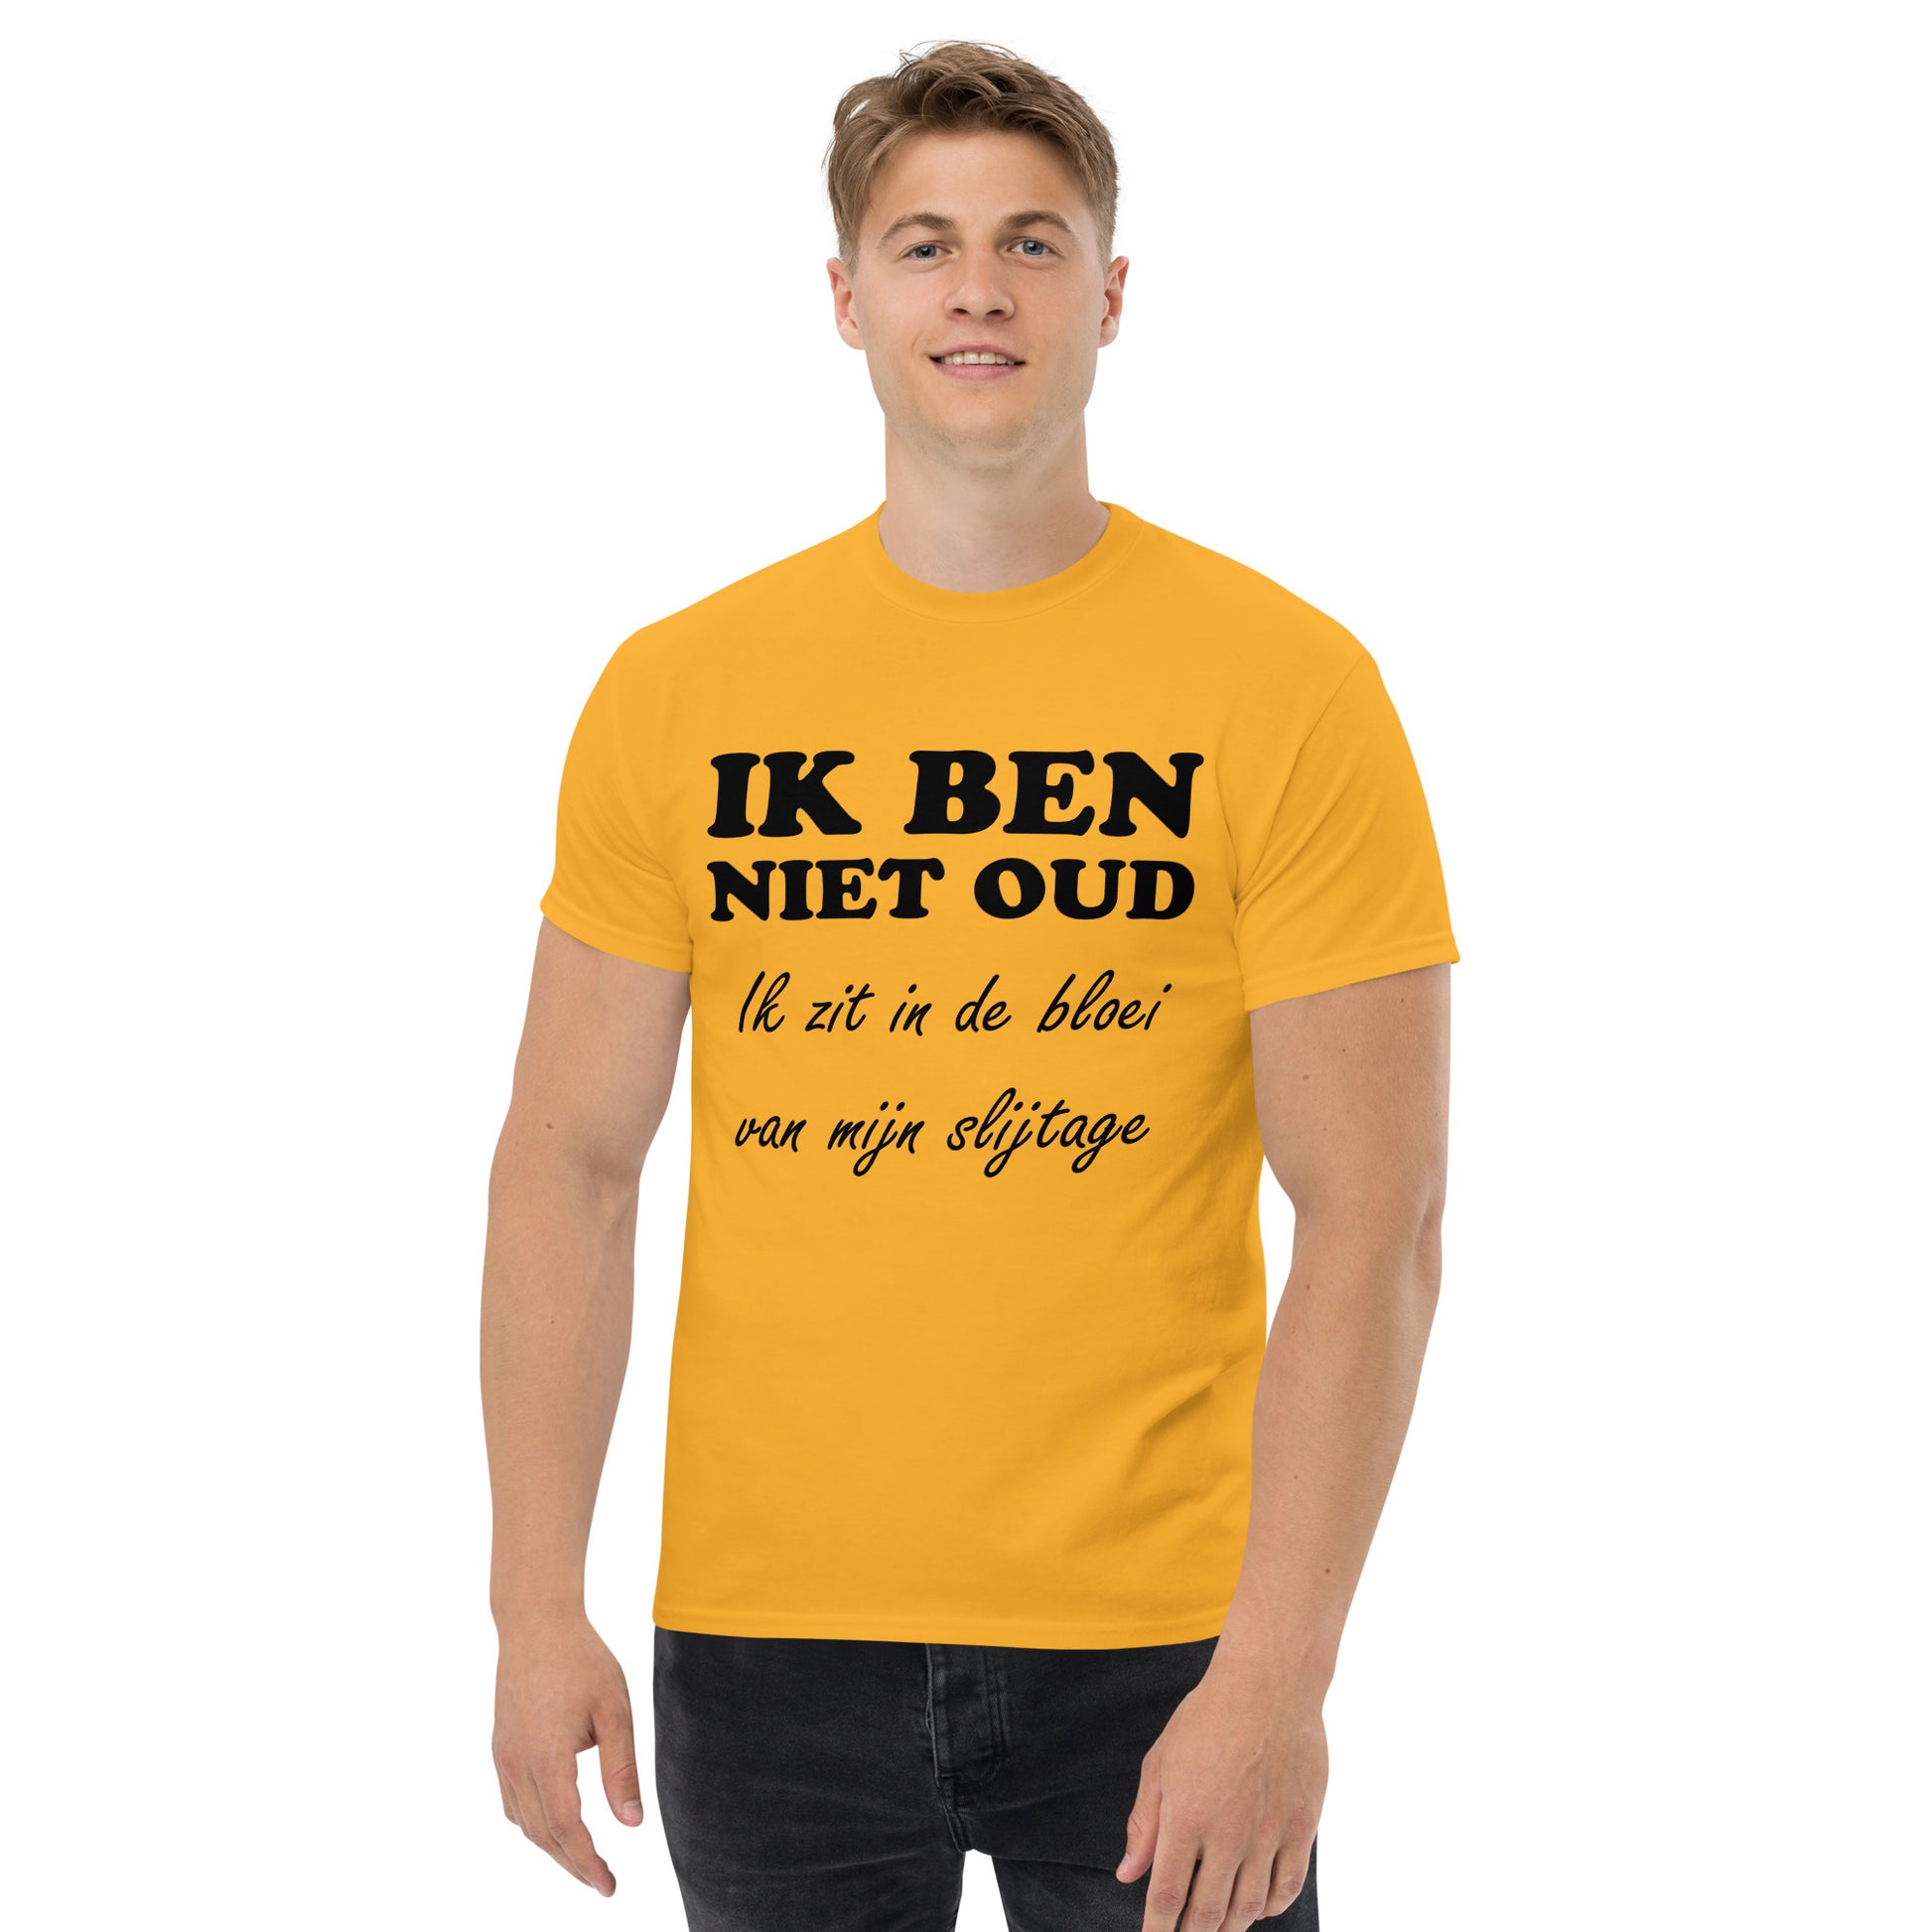 Gold T-shirt with the text "IK BEN NIET OUD ik zit in de bloei van mijn slijtage"